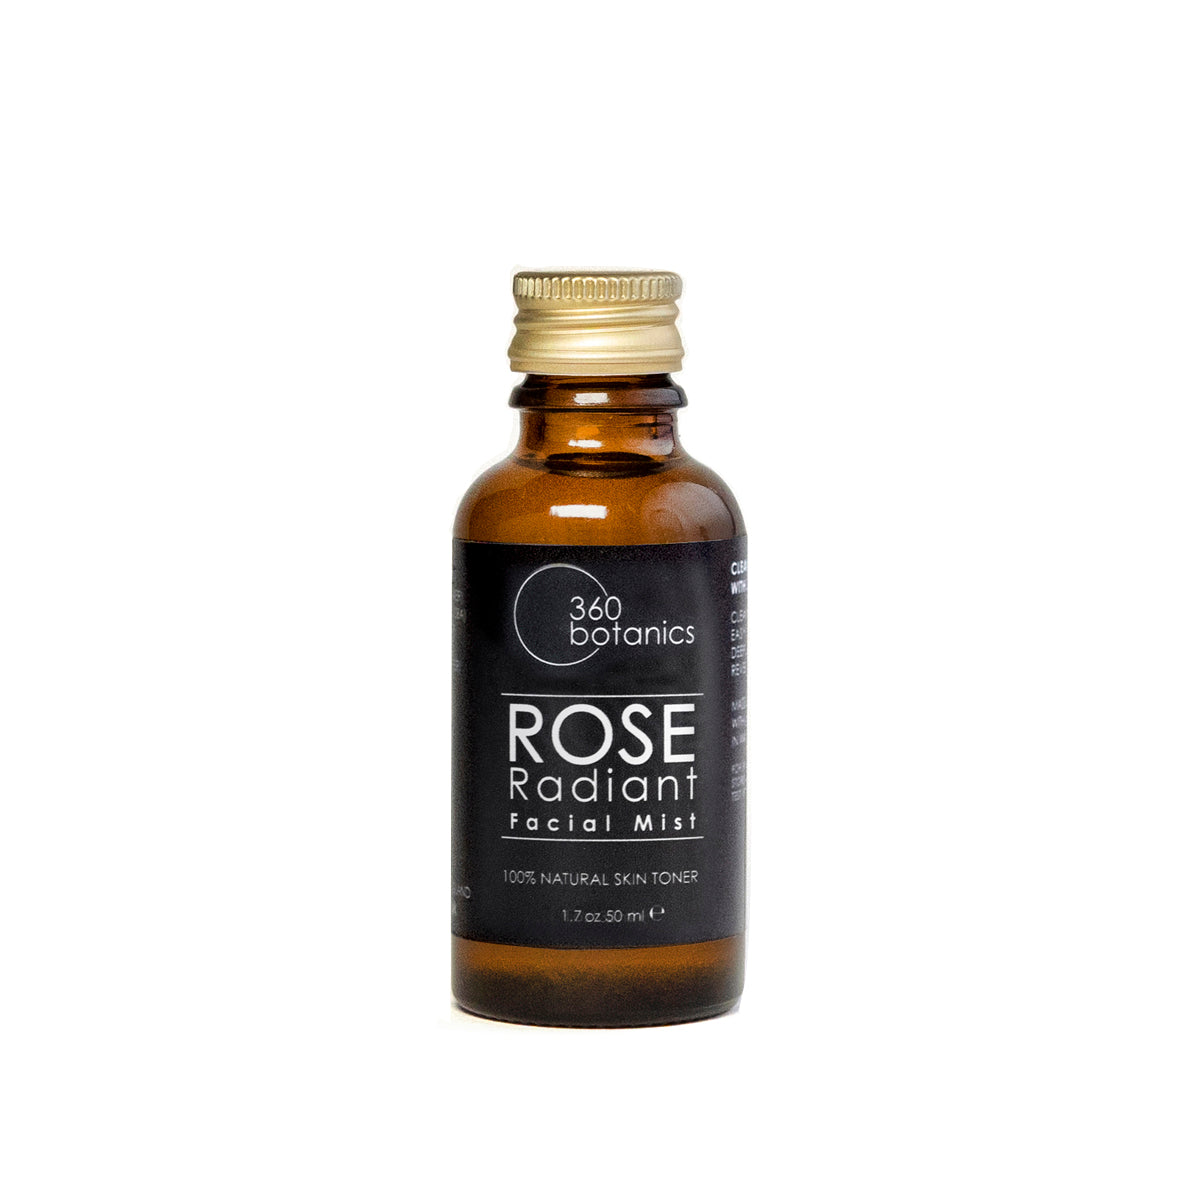 Rose Radiant facial mist skin toner refill bottle white background